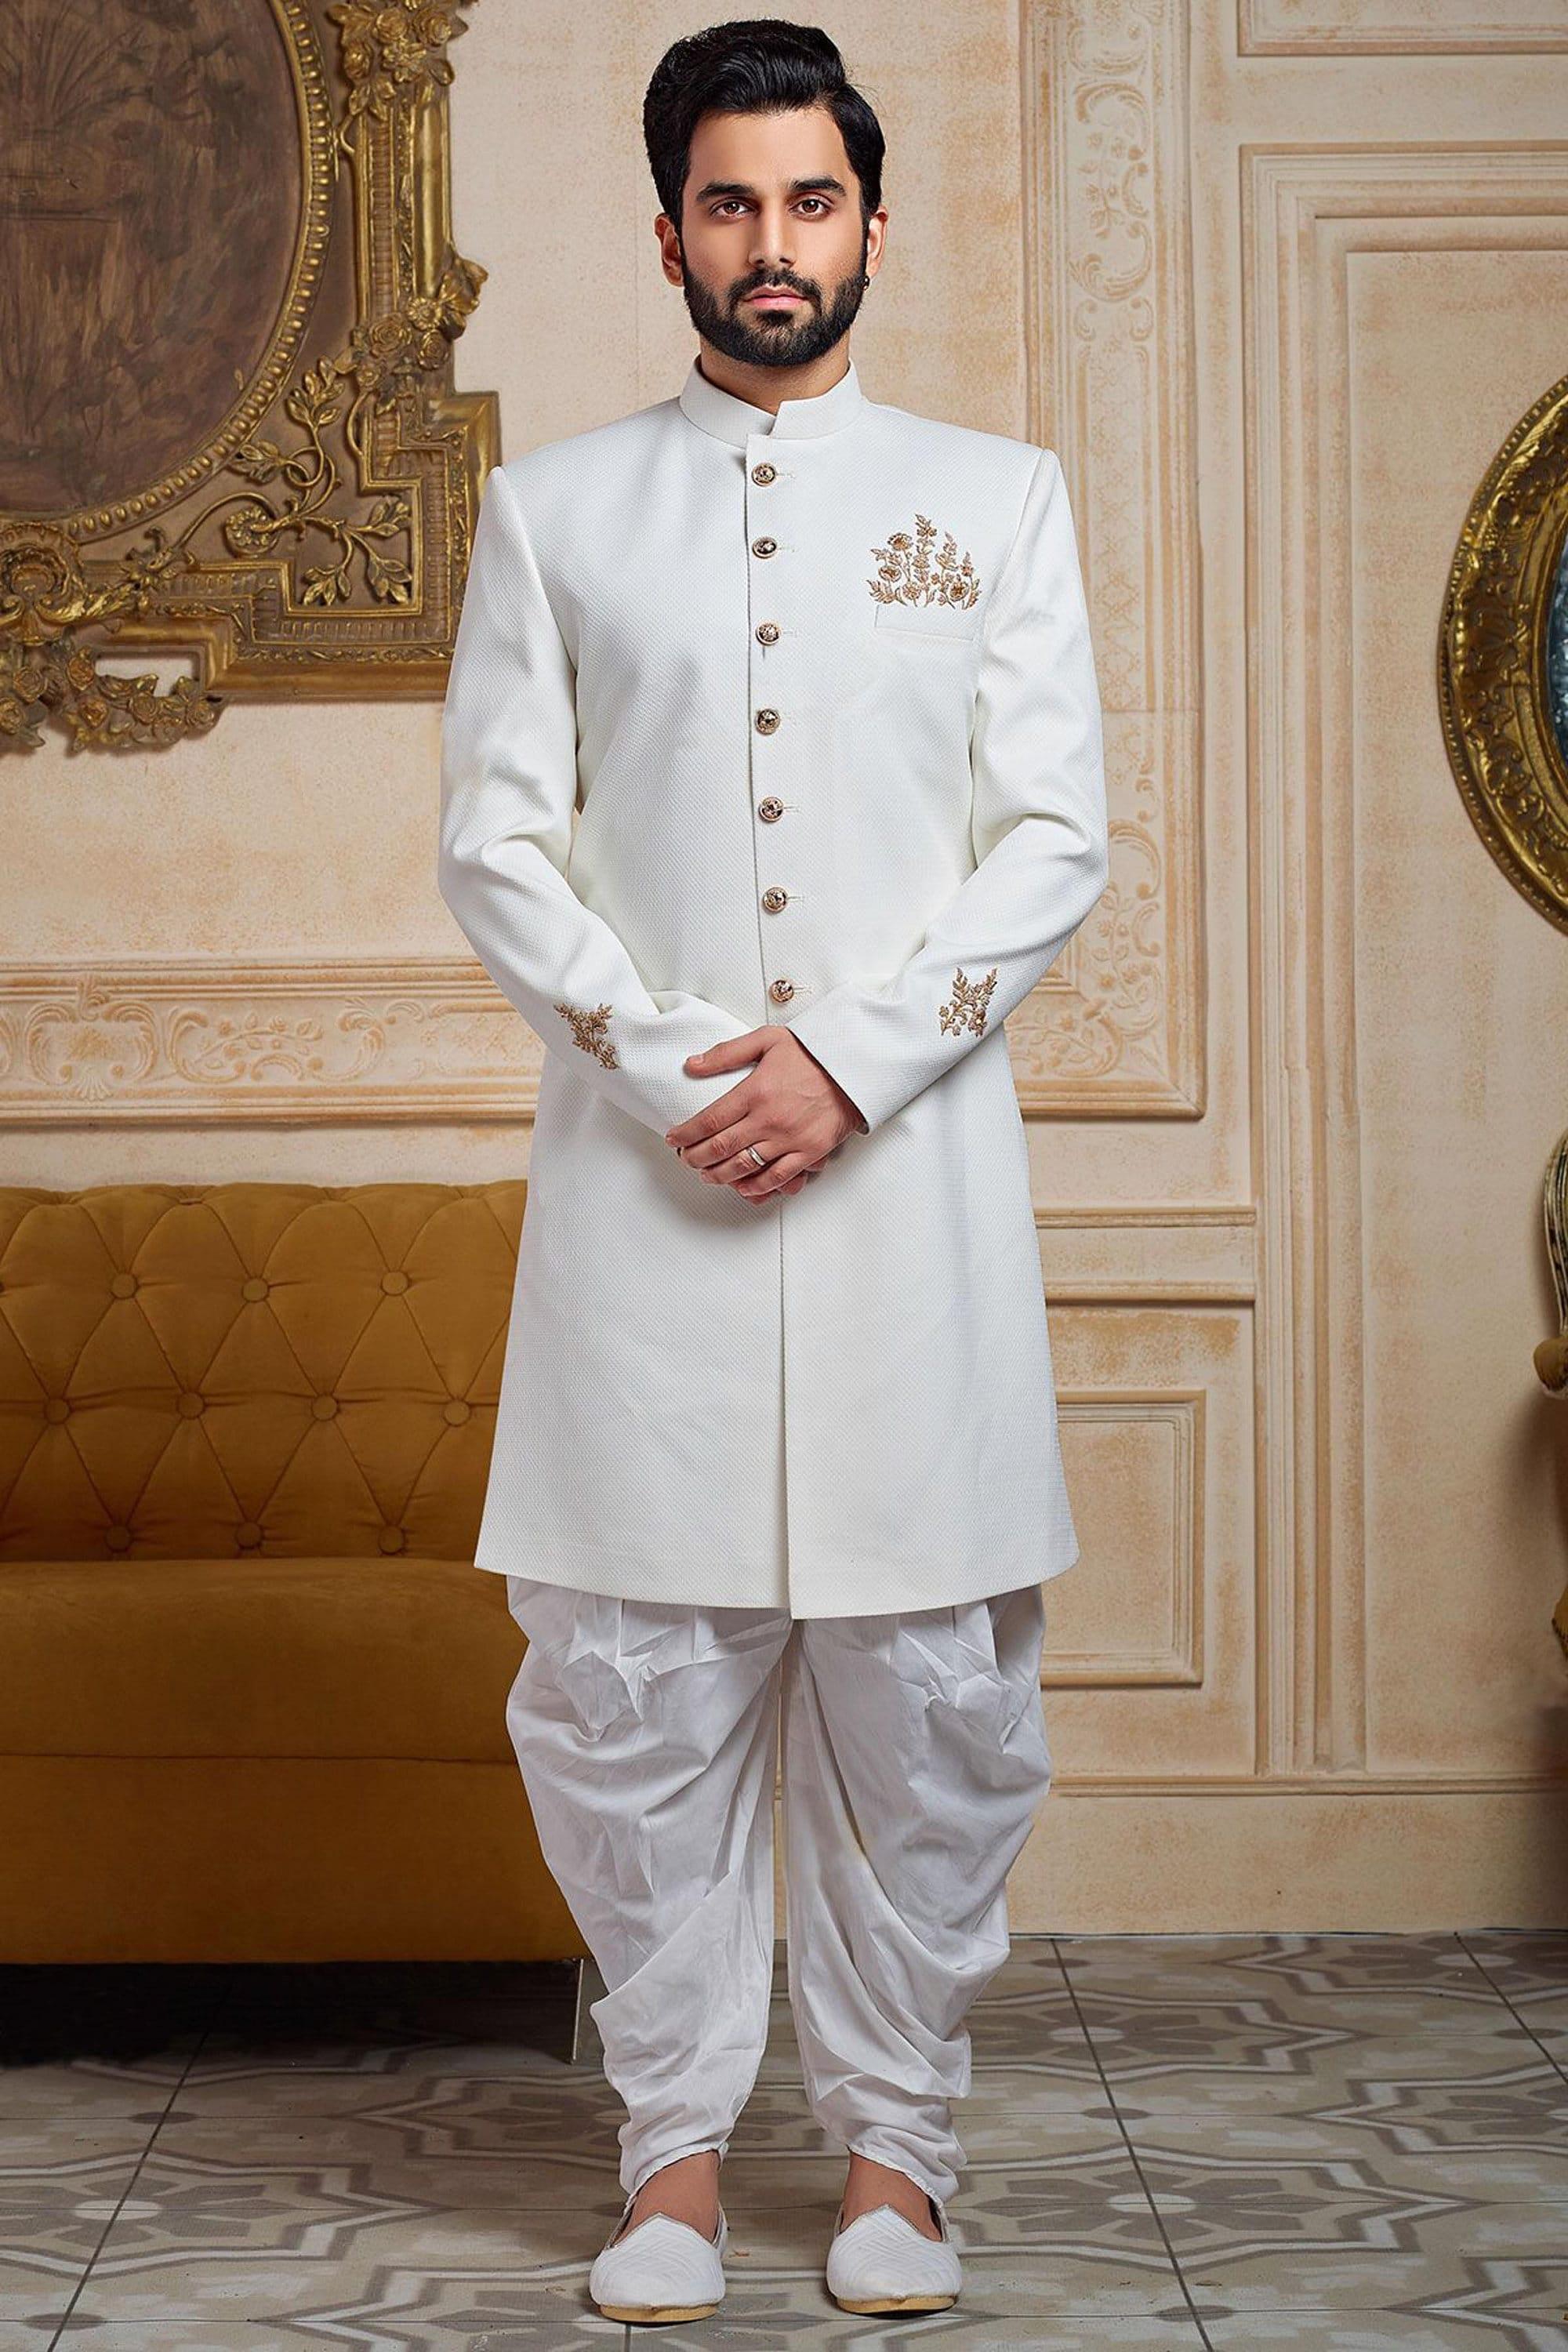 41 White Bridal Lehenga - For Royal and Elegant Indian Wedding